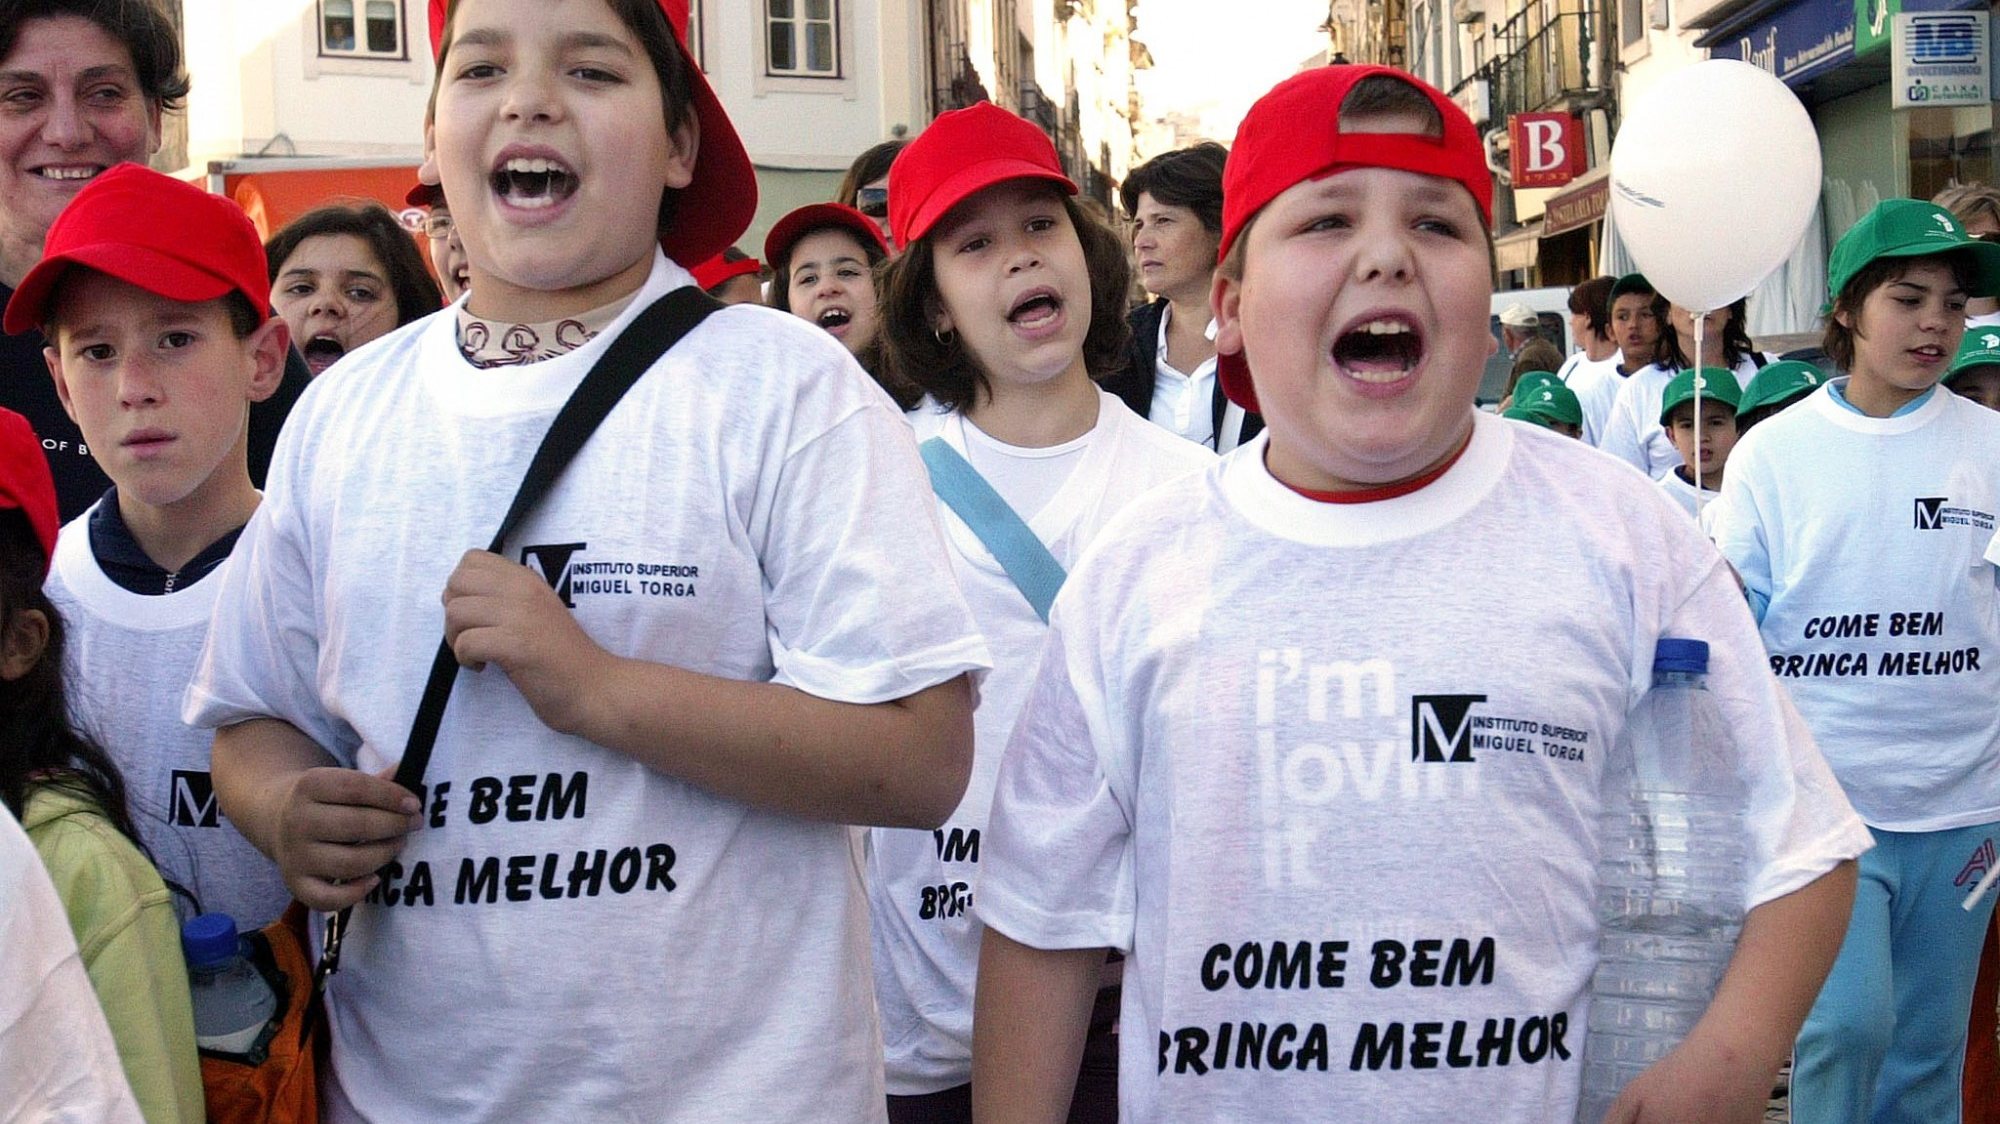 Em 2008, Portugal era o segundo país com maior prevalência de excesso de peso e obesidade infantil